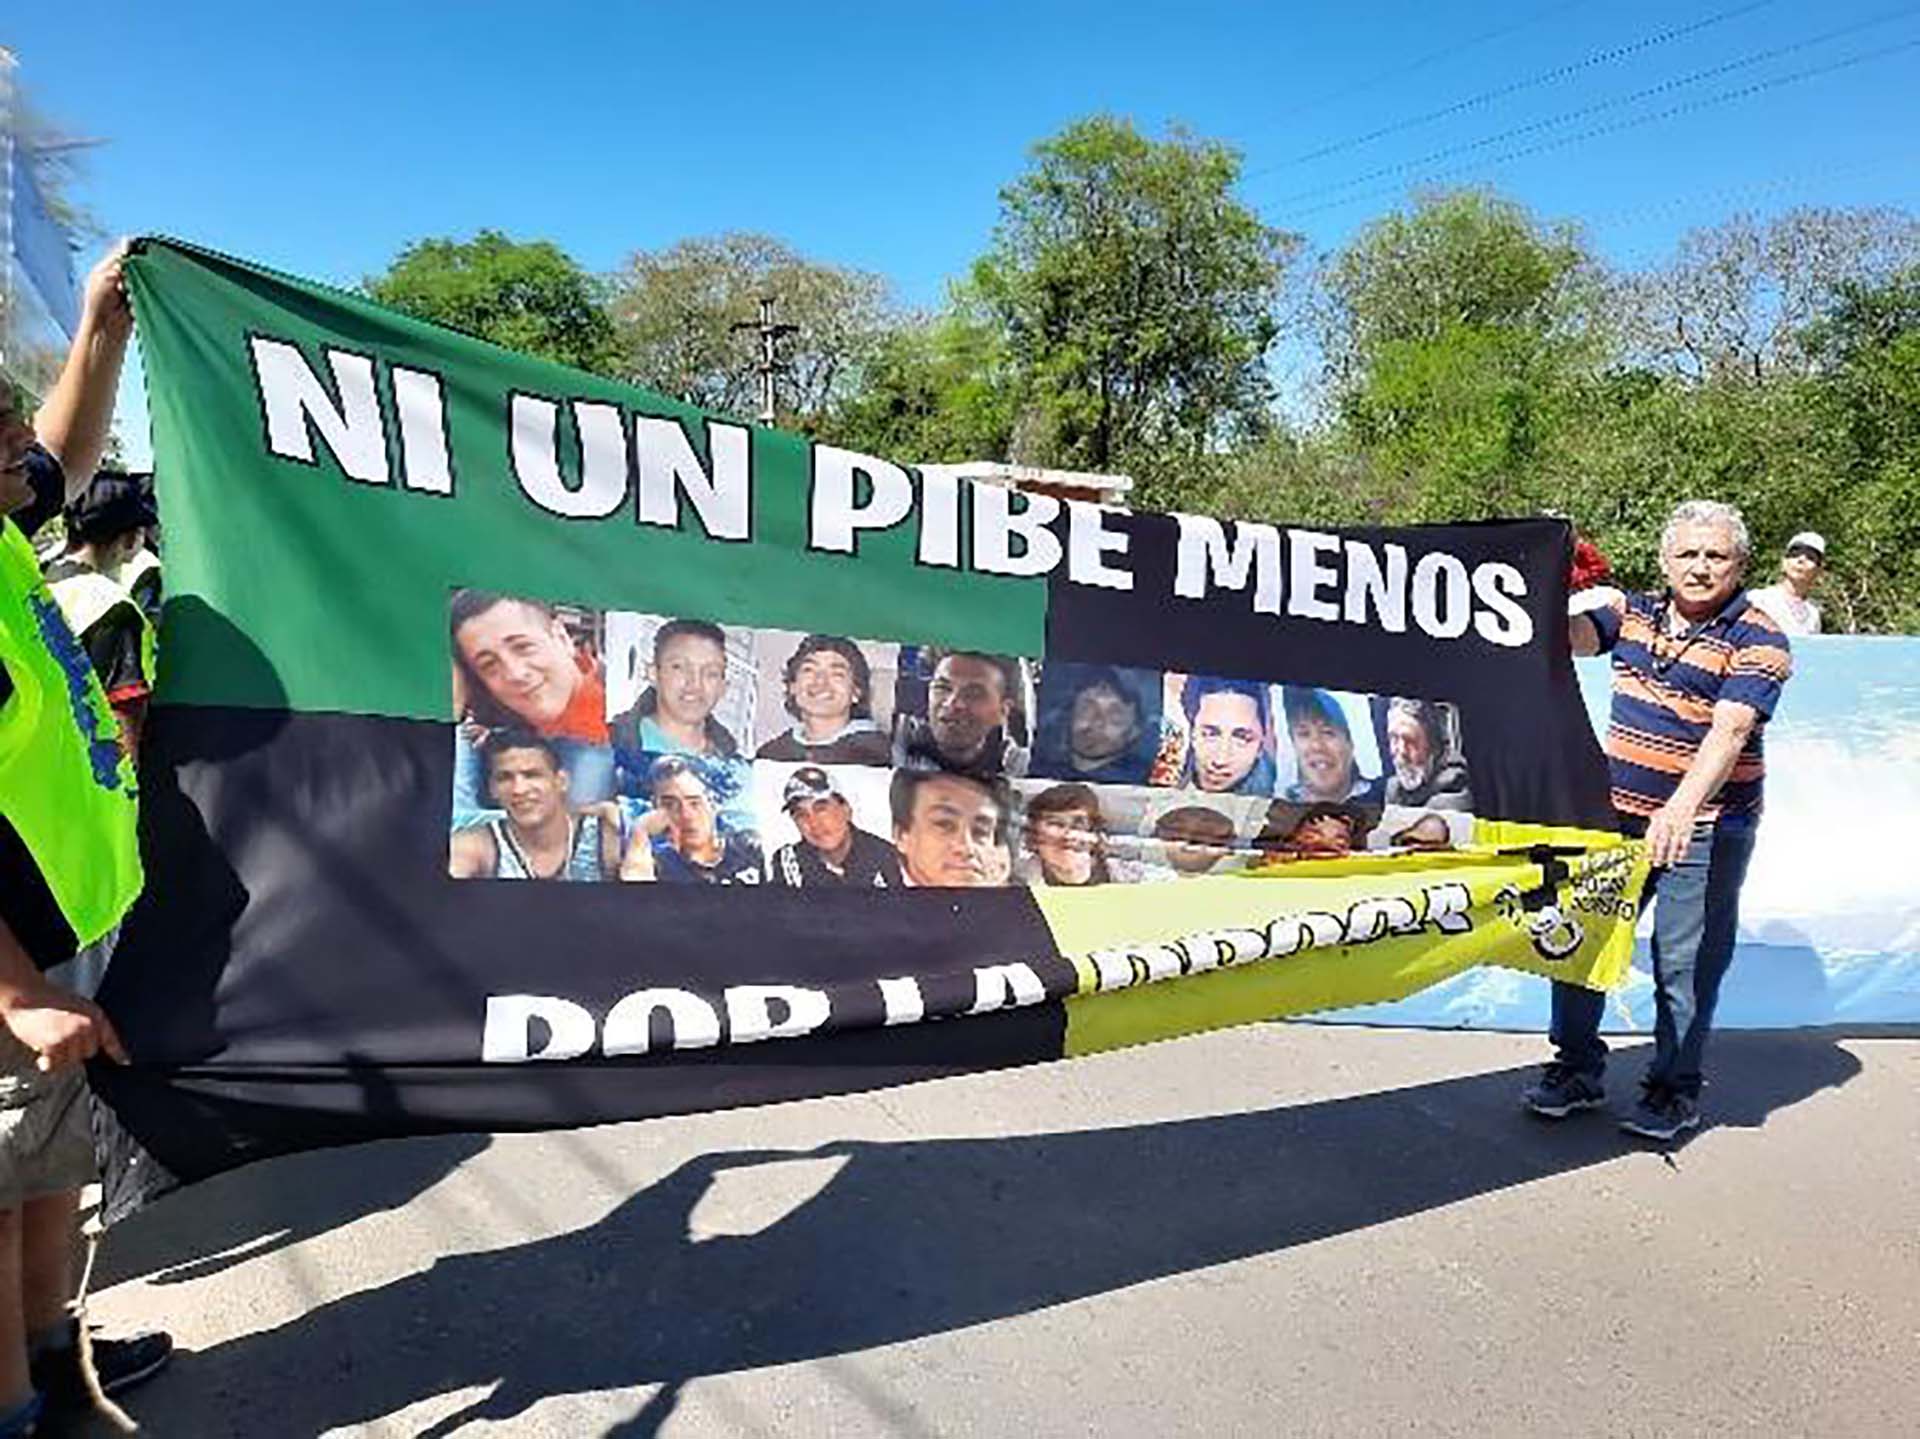 La peregrinación nacional “Ni un pibe menos por la droga” llegará el 11 de noviembre a Tucumán